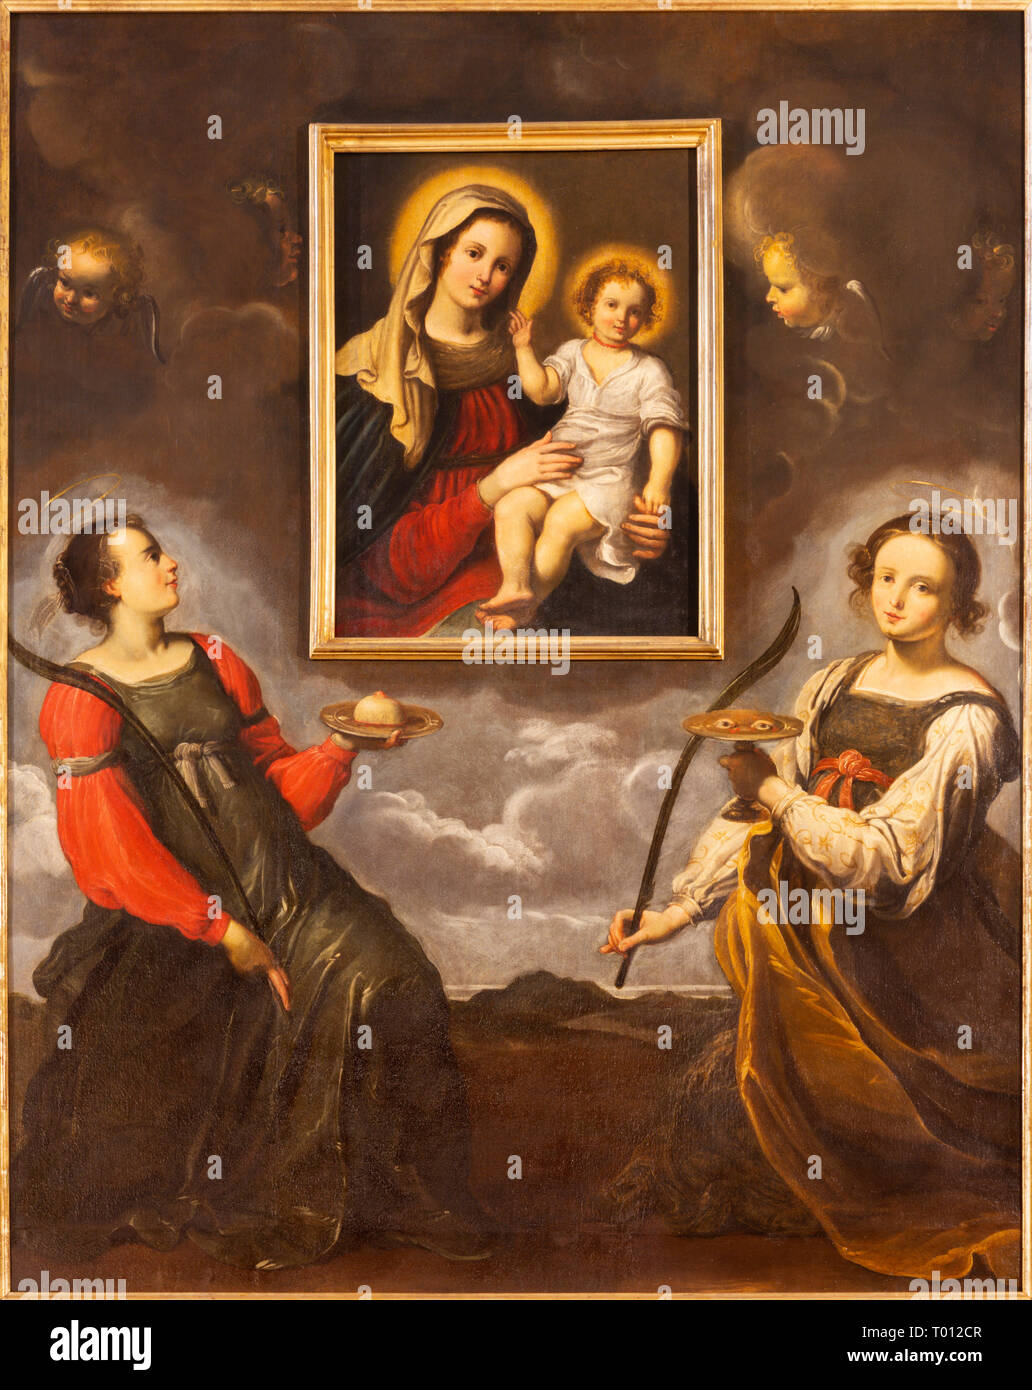 PARMA, Italia - 17 Aprile 2018: i Santi Lucia e Agata adorando l immagine della Madonna nella Chiesa di Santa Lucia dal maestro della scuola di Parma Foto Stock